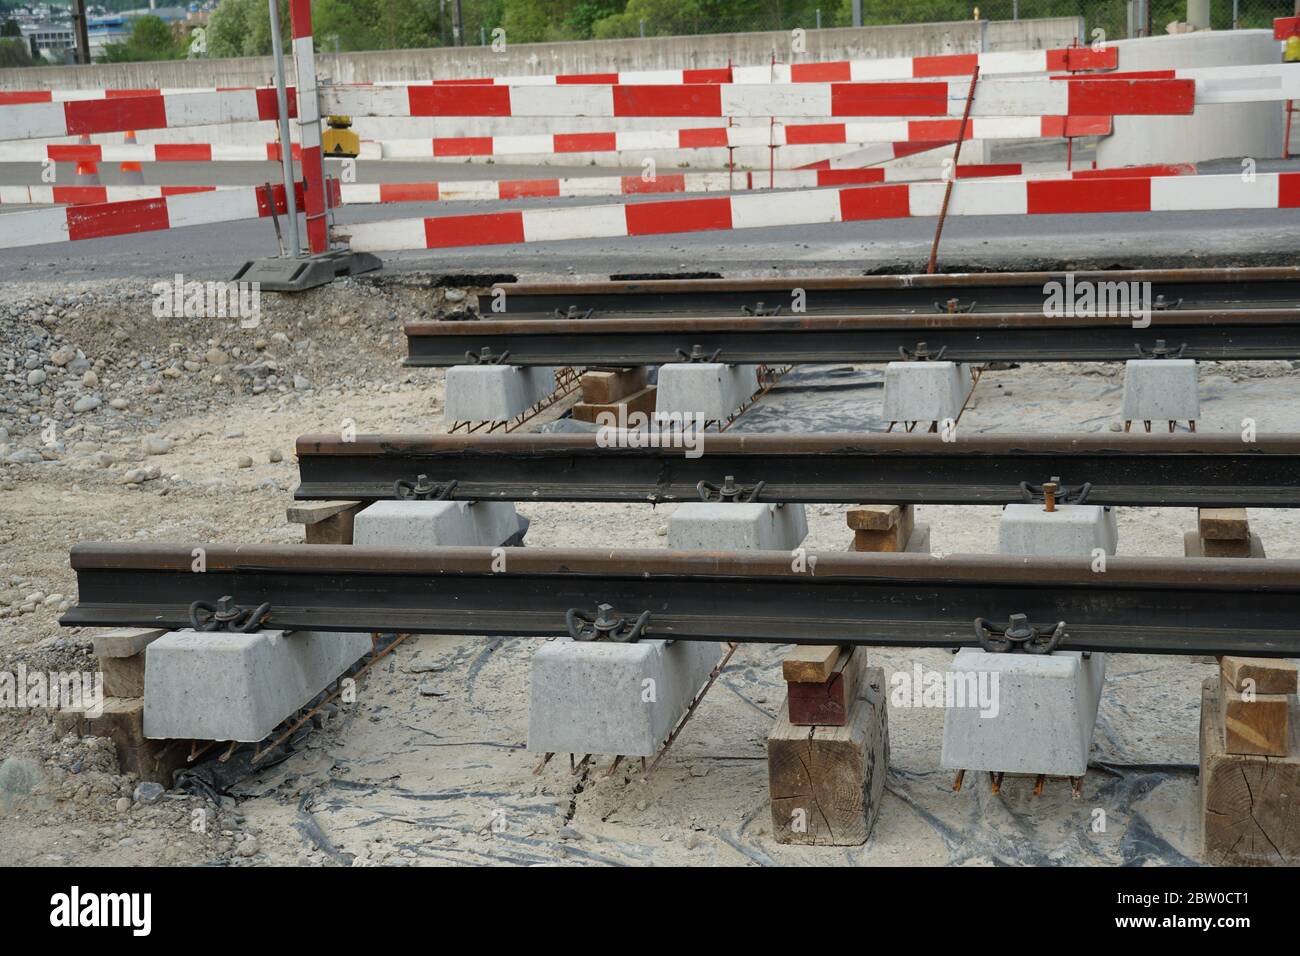 Rails de tramway prêts à être installés sur un chantier de génie civil, en construisant une ligne de tramway avec des planches de barrière rouges et blanches. Banque D'Images